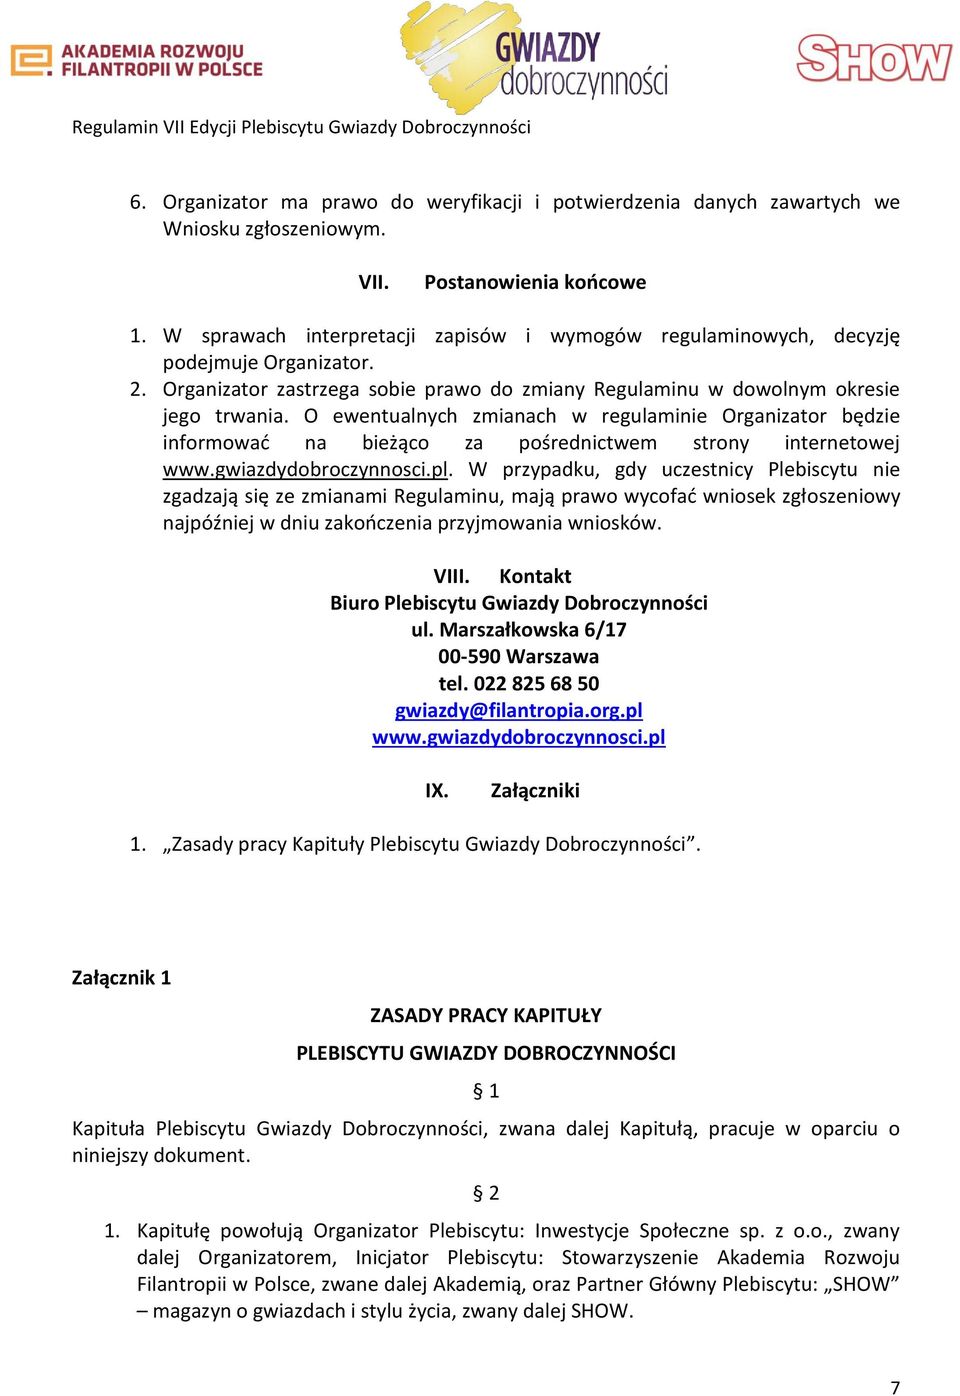 O ewentualnych zmianach w regulaminie Organizator będzie informować na bieżąco za pośrednictwem strony internetowej www.gwiazdydobroczynnosci.pl.